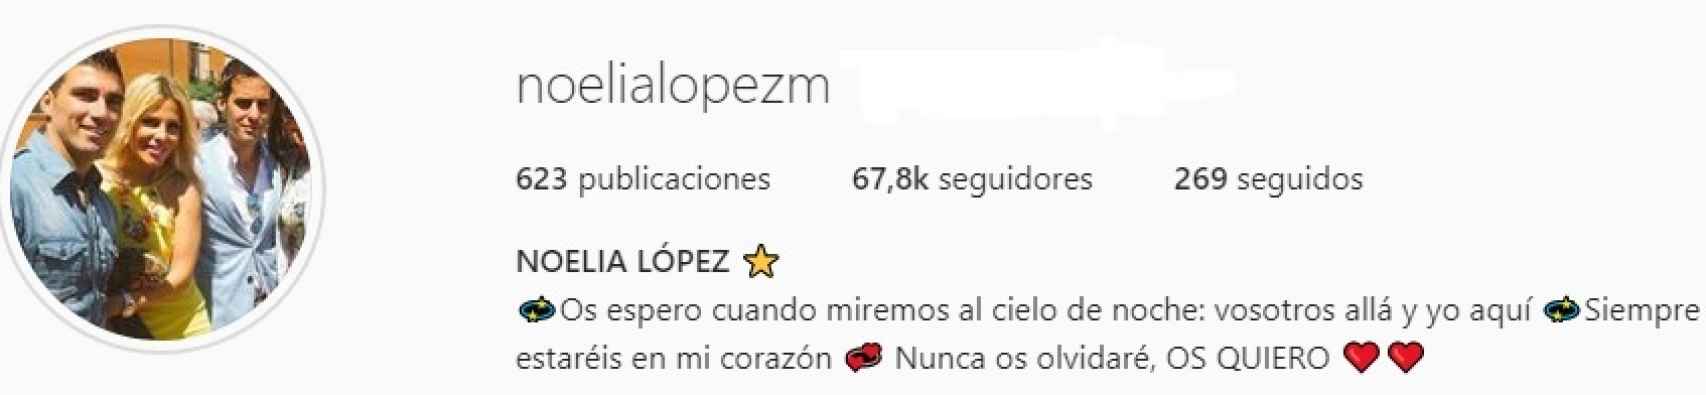 Descripción del perfil de Instagram de Noelia López.